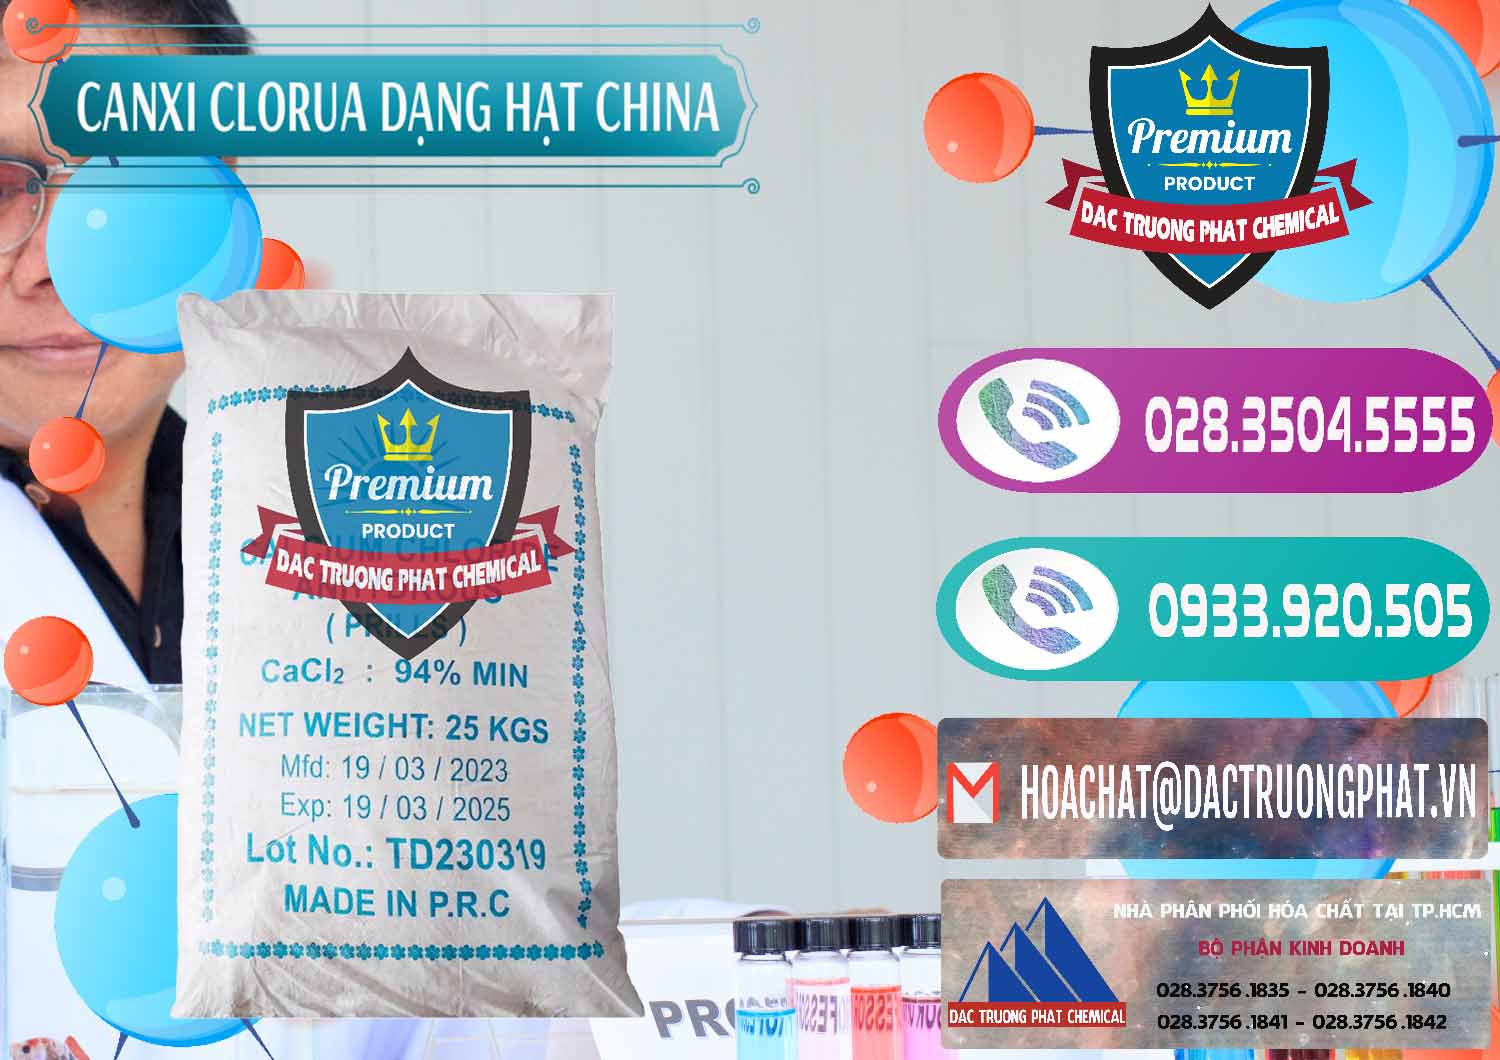 Nơi chuyên cung ứng - bán CaCl2 – Canxi Clorua 94% Dạng Hạt Trung Quốc China - 0373 - Cty chuyên bán - cung cấp hóa chất tại TP.HCM - hoachatxulynuoc.com